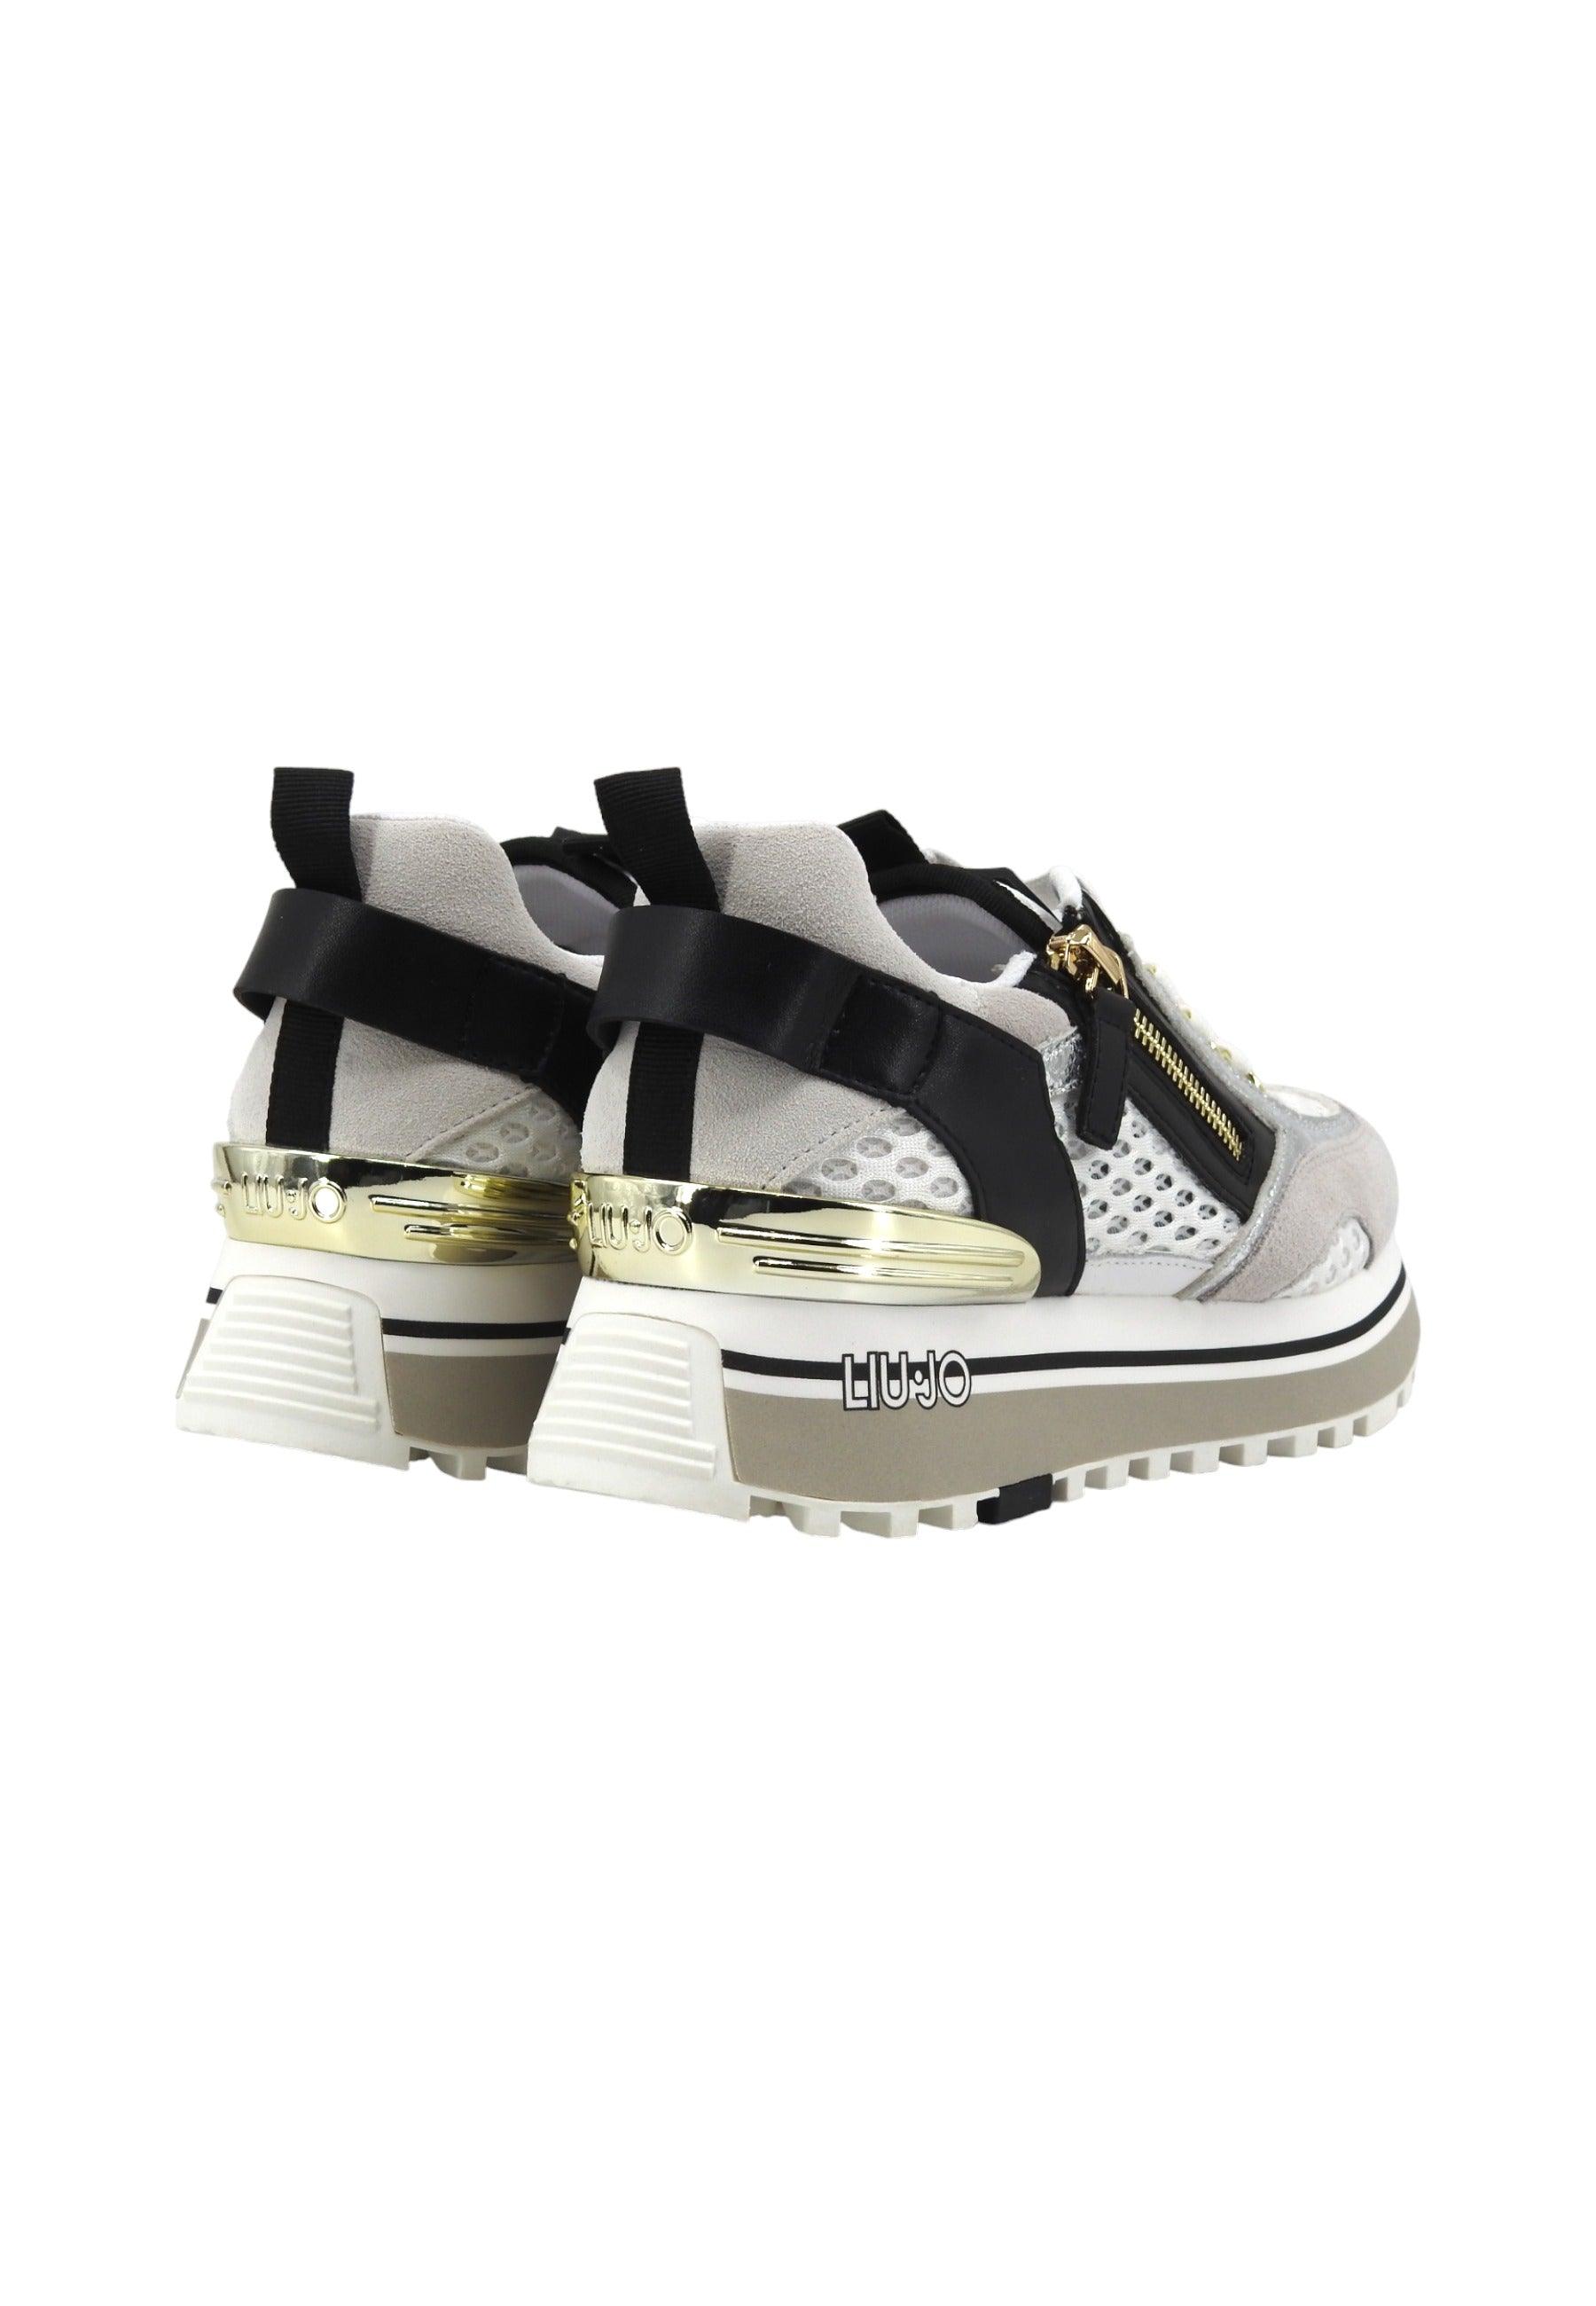 LIU JO Maxi Wonder 72 Sneaker Donna White Black BA4057TX258 - Sandrini Calzature e Abbigliamento